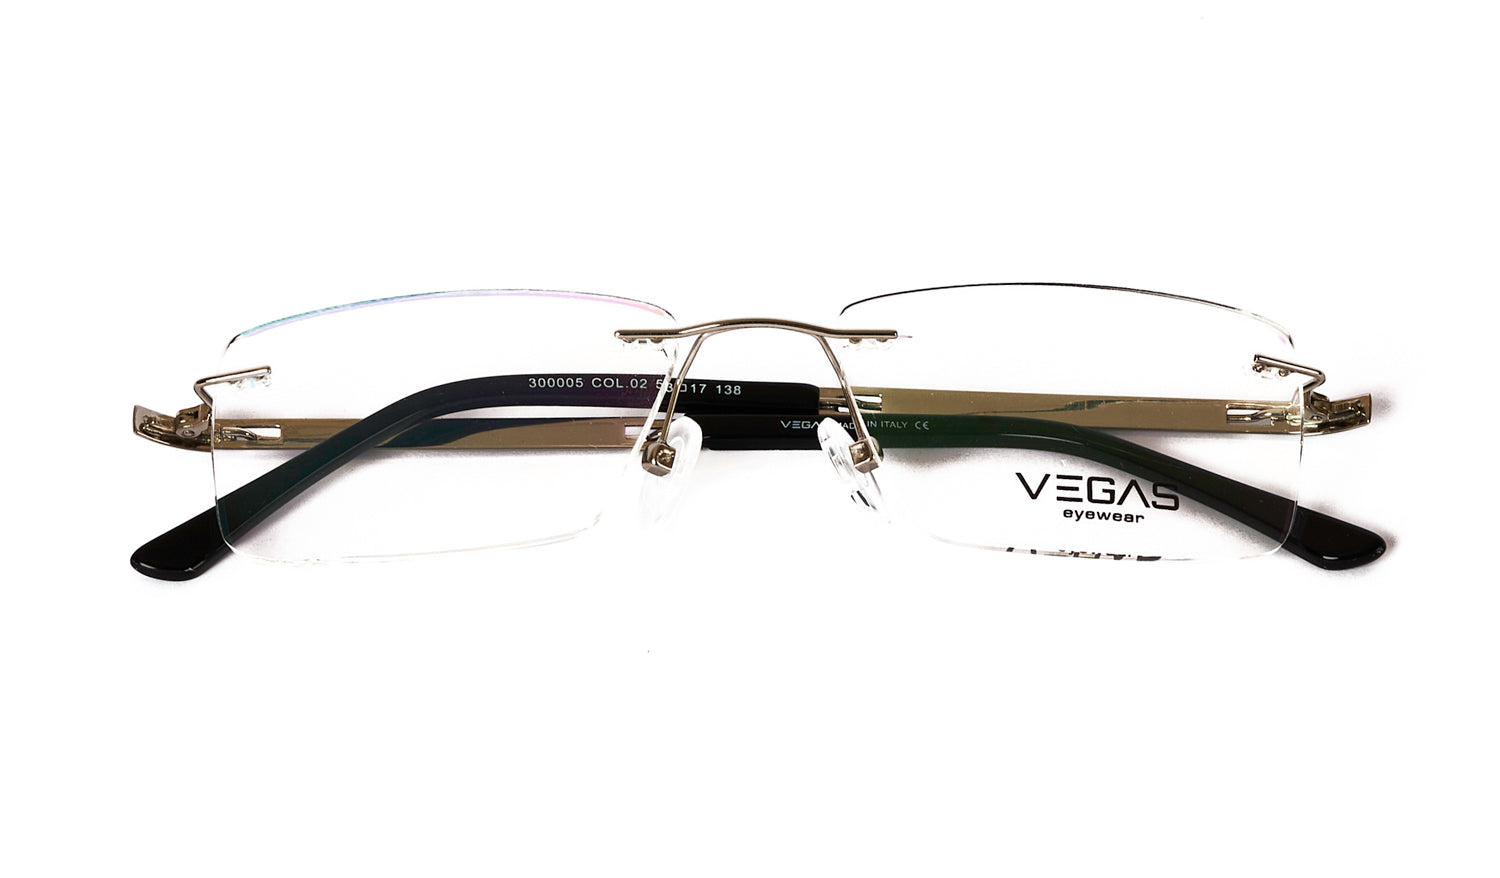 VEGAS 300005 - COC Eyewear